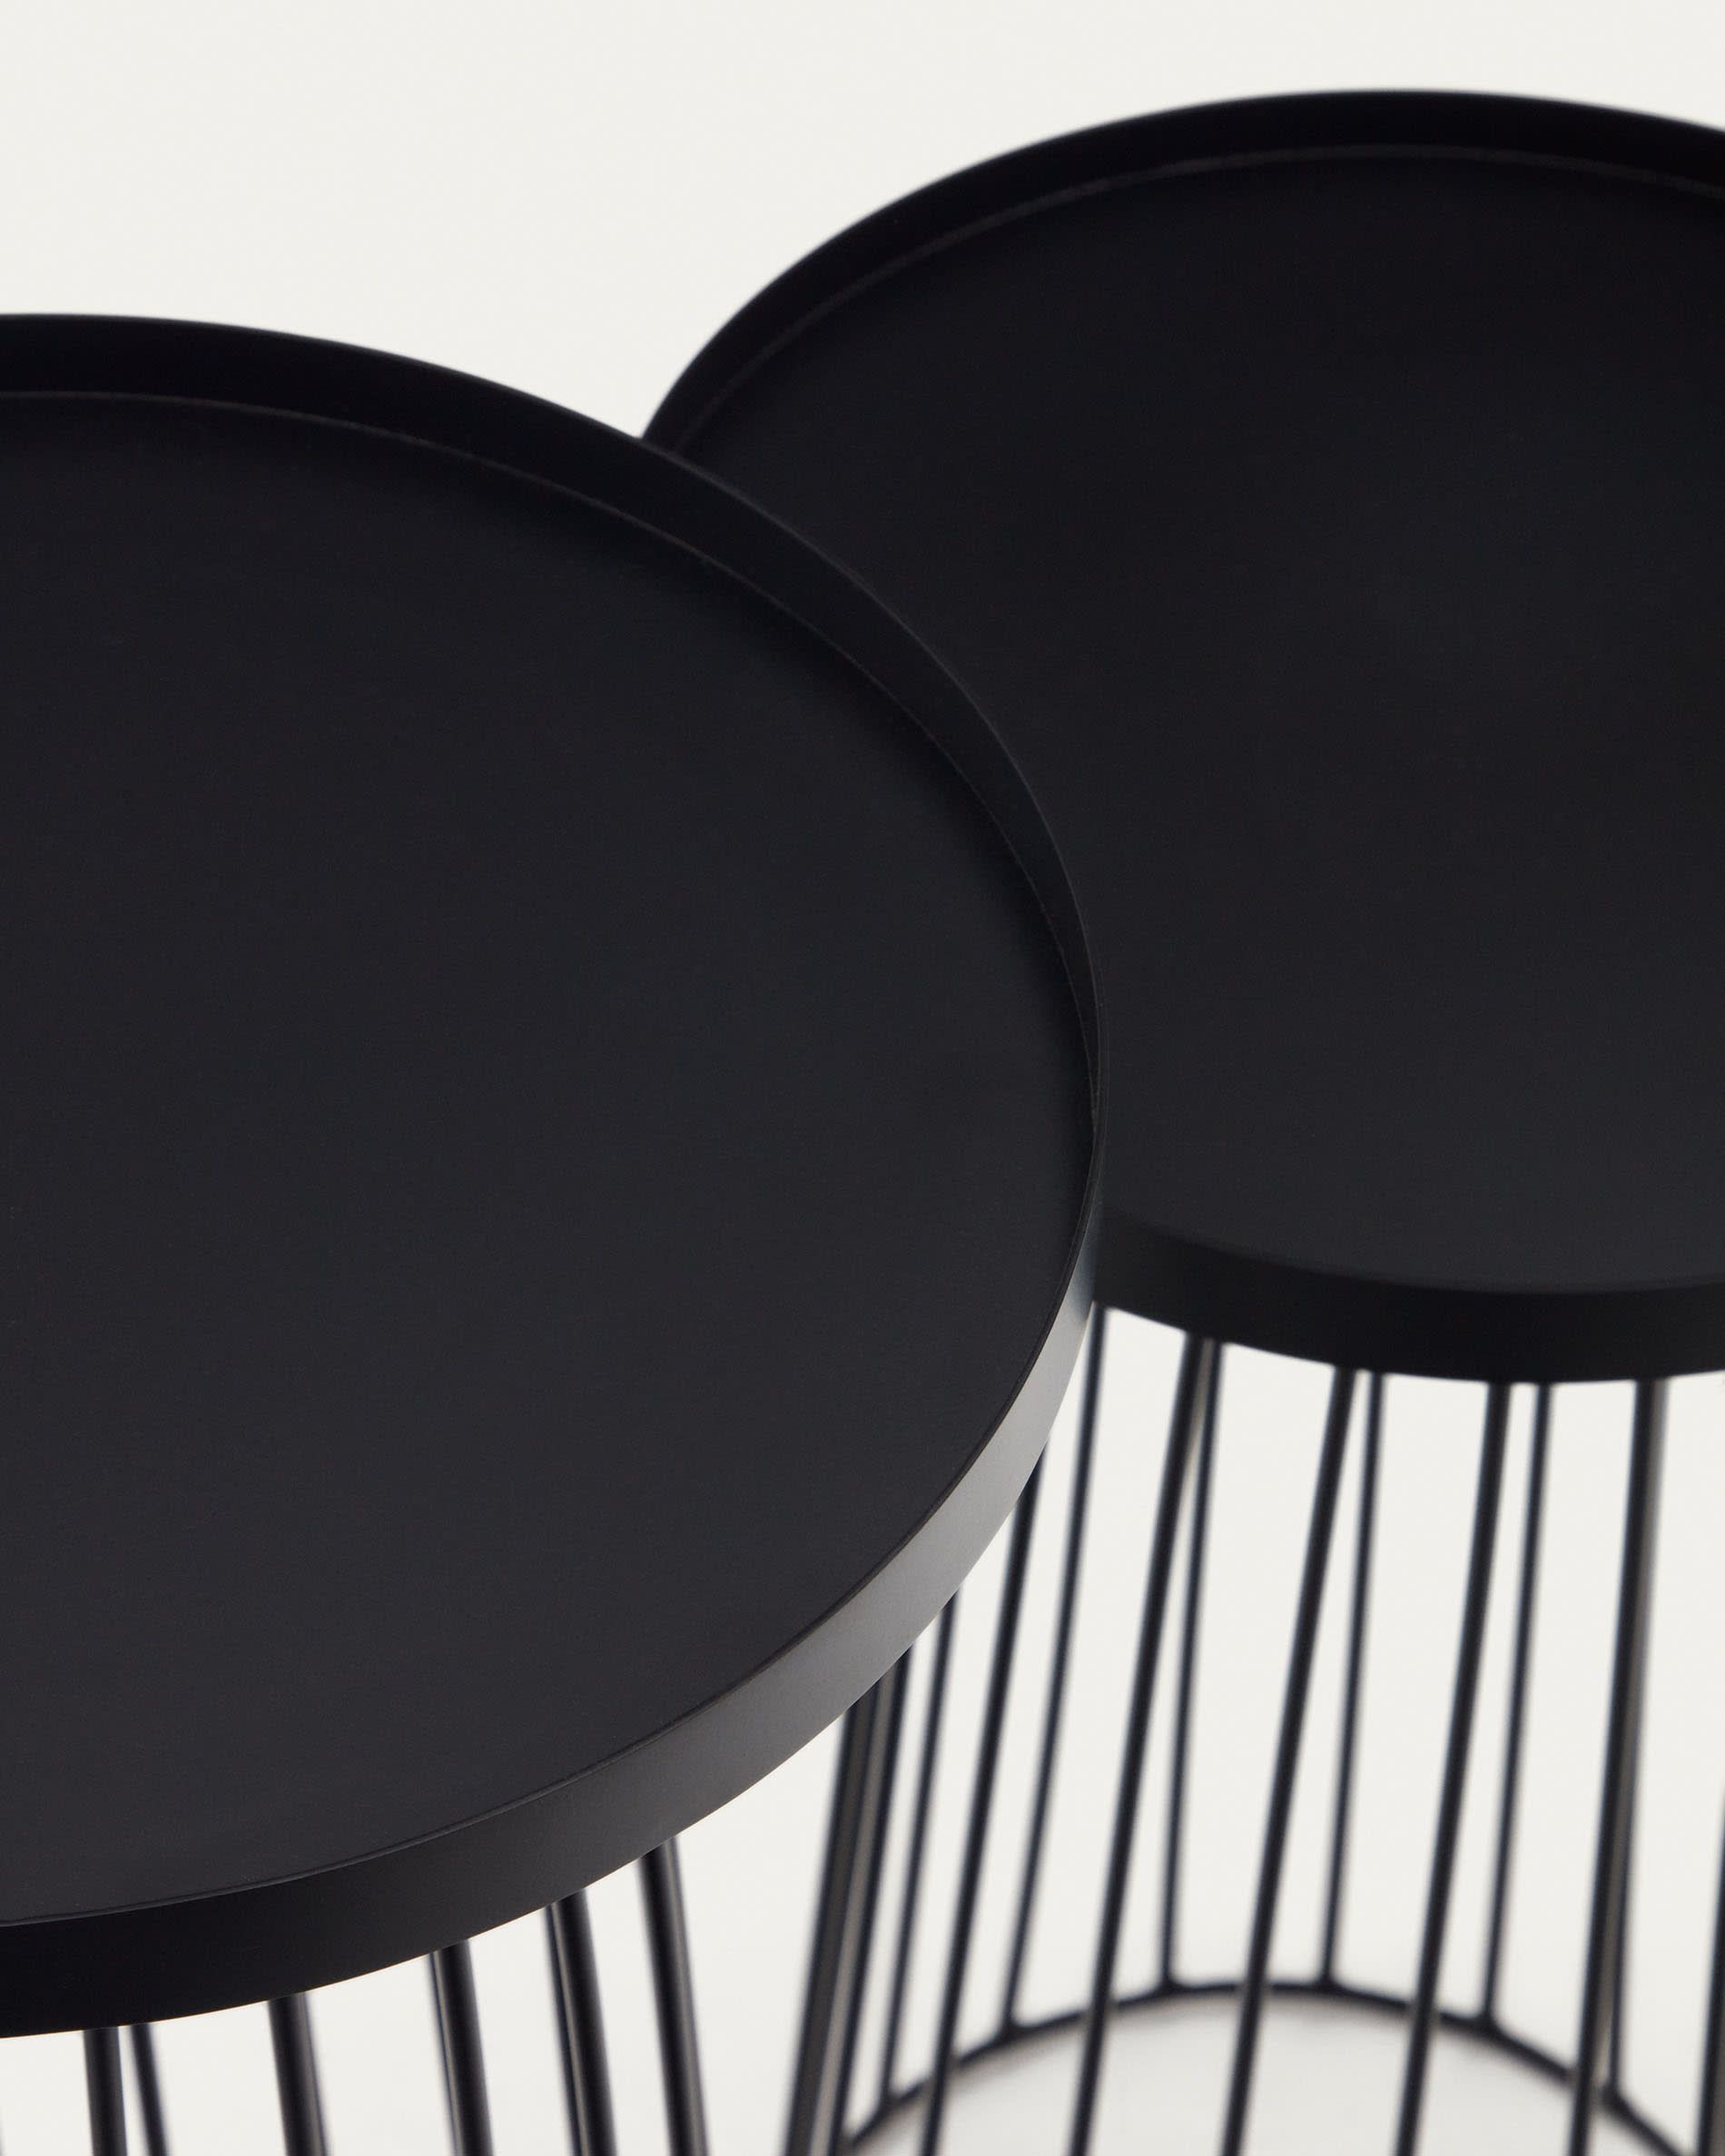 Набор Dilva из 2 черных металлических приставных столиков Dilva